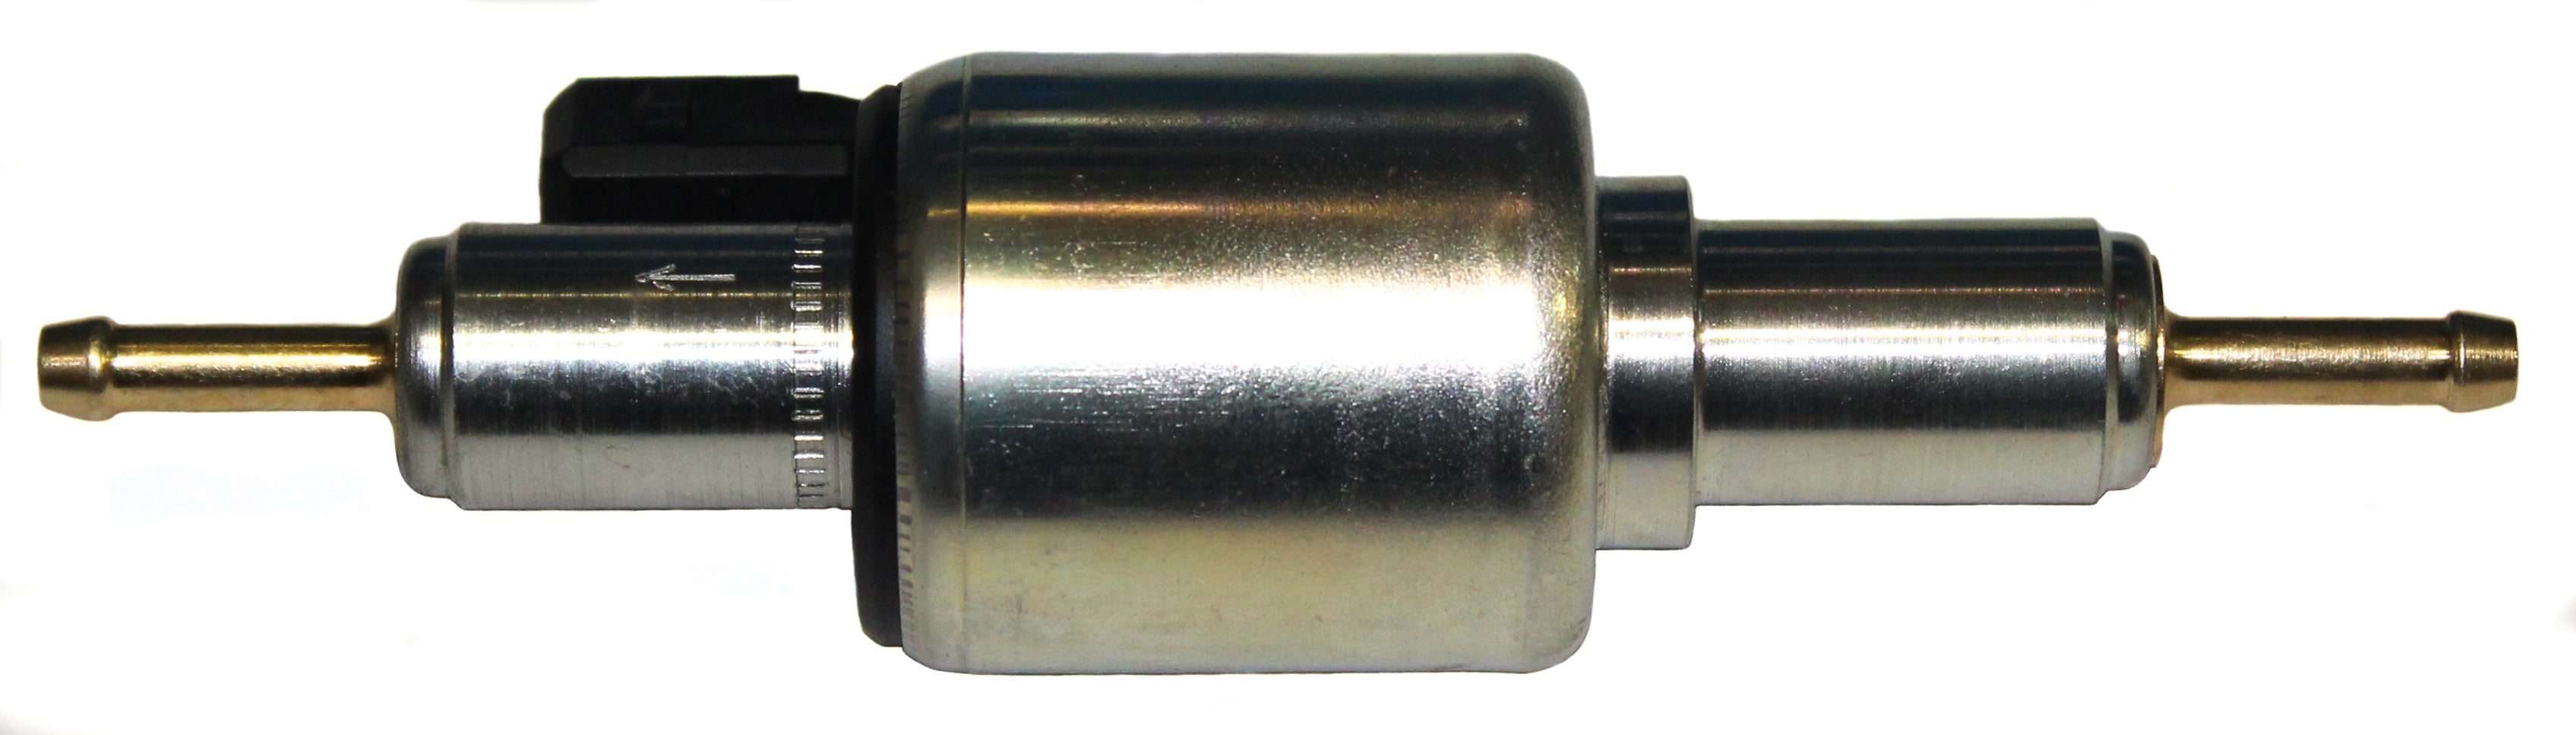 Webasto Fuel Dosing Pump Dp30.2 Diesel 12V 9012868C Heater Part